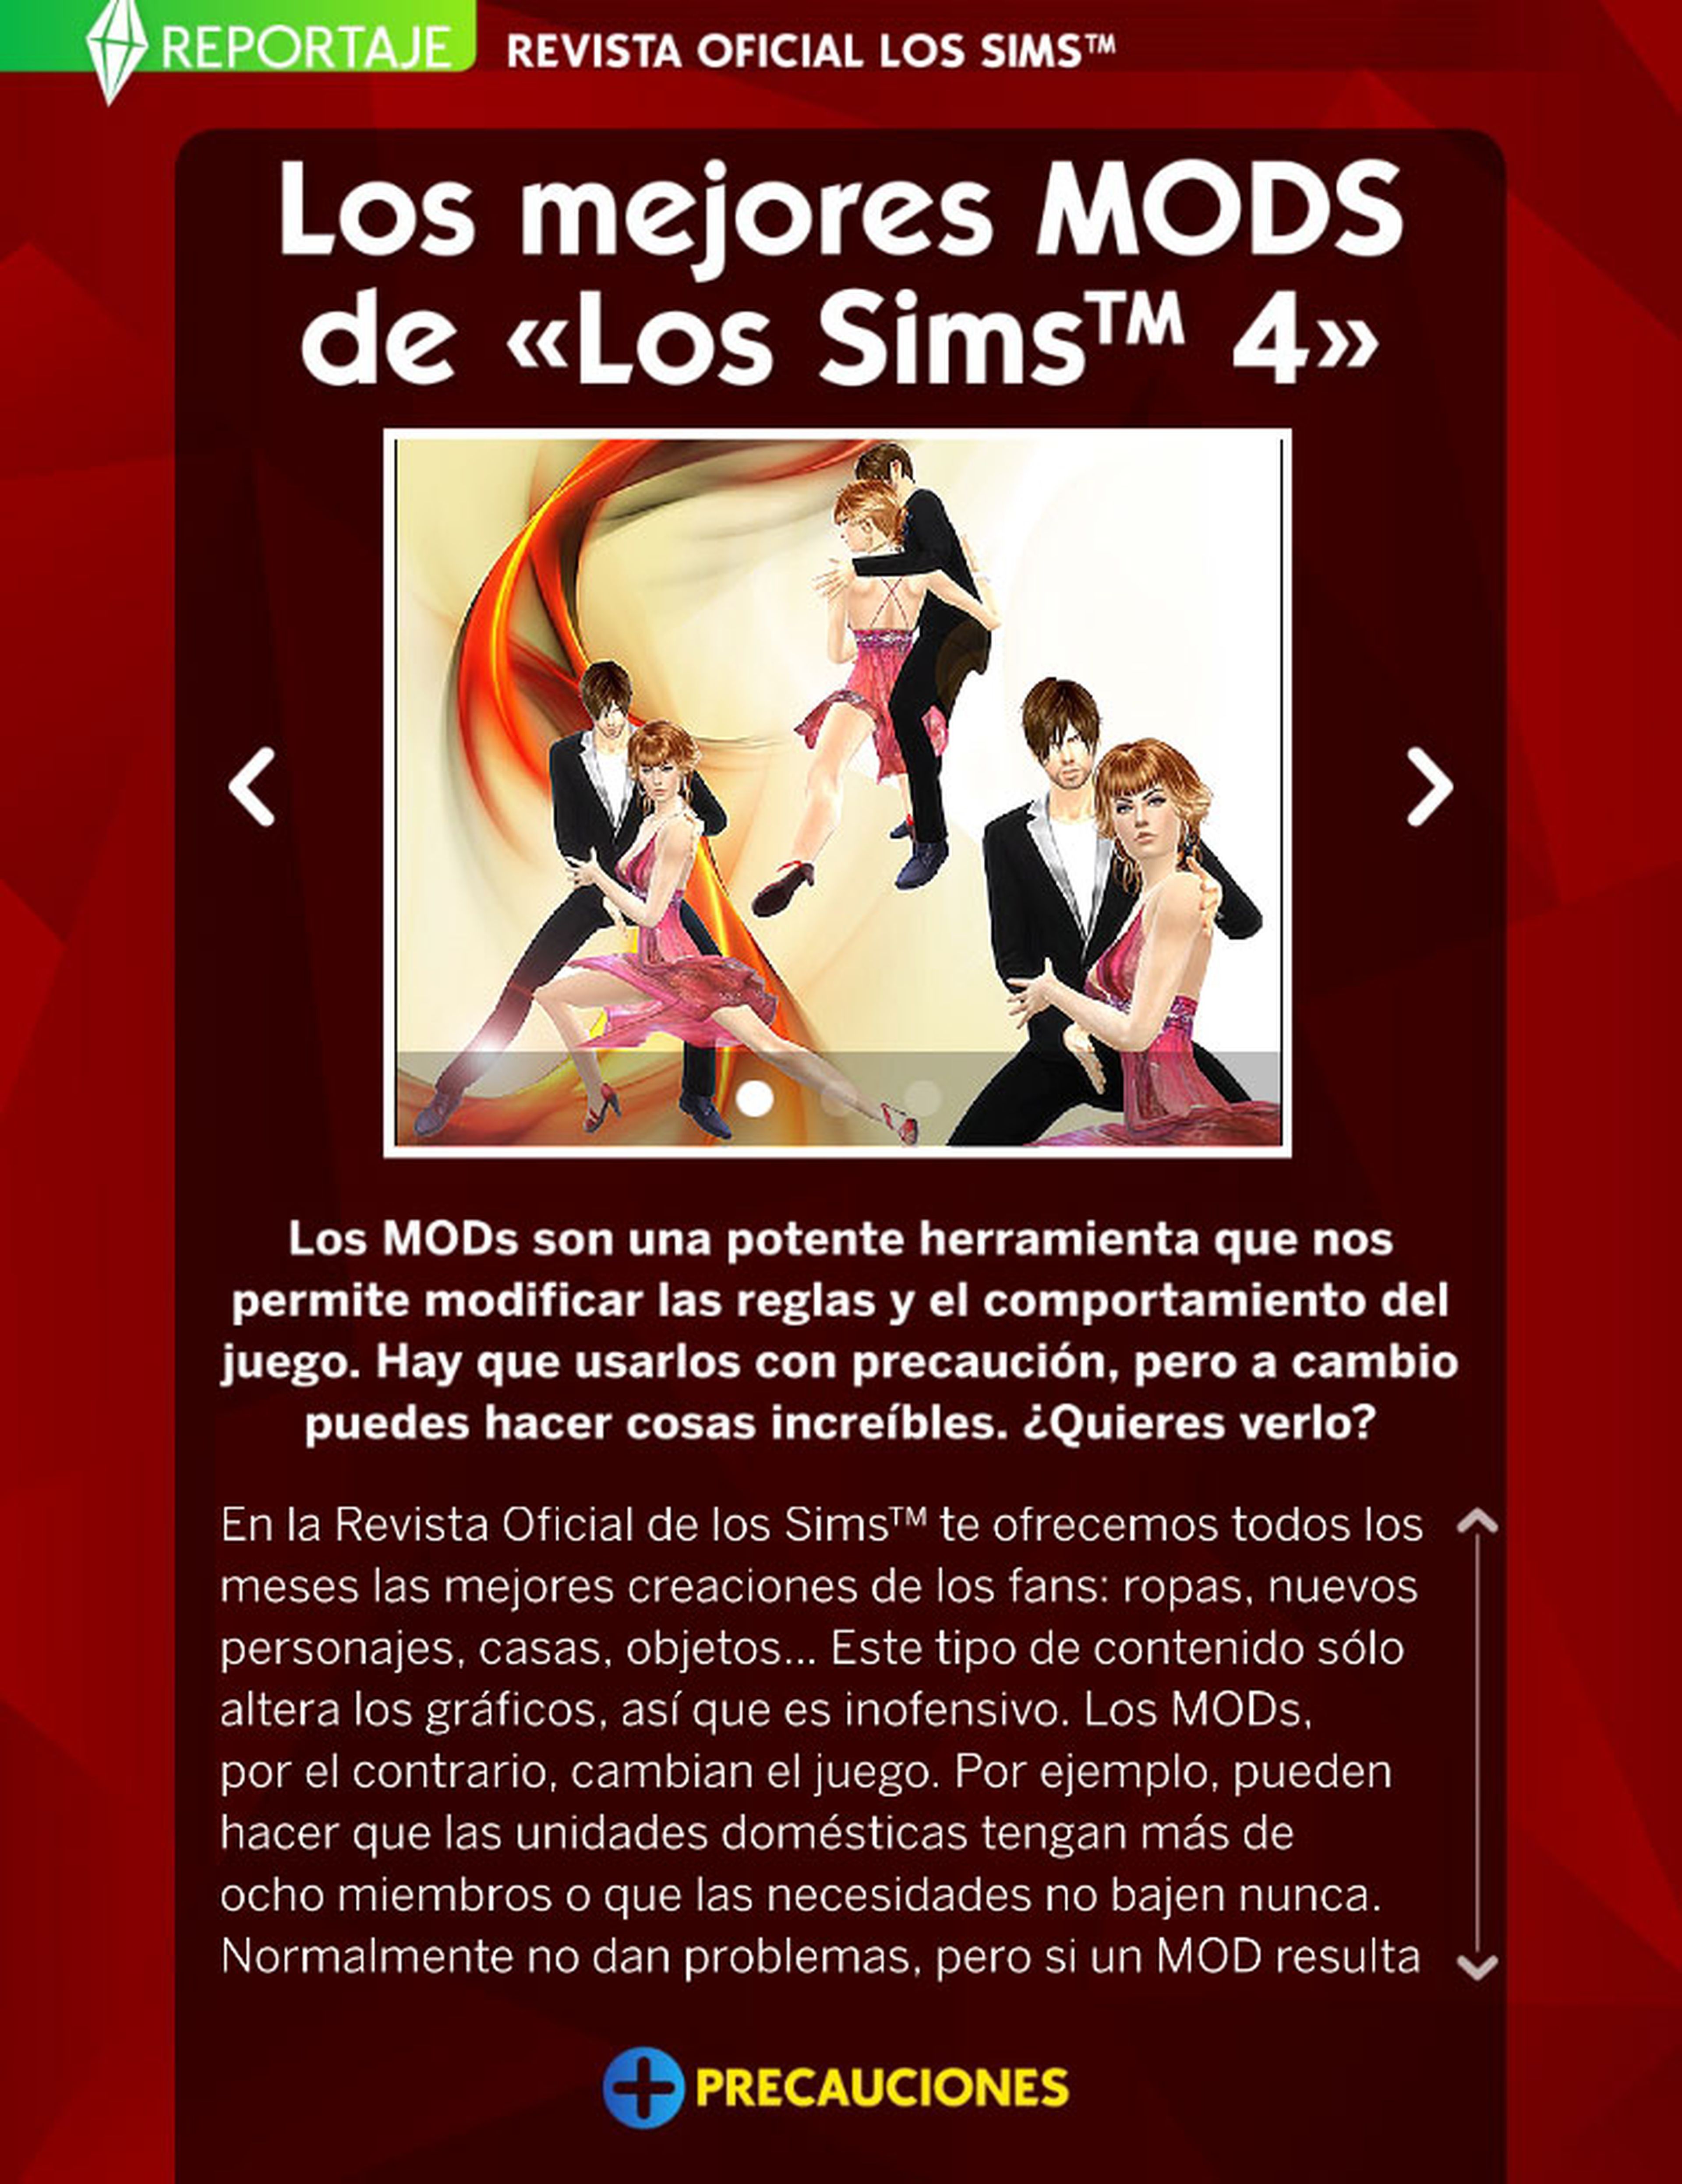 ¡Ya puedes descargar gratis el número 14 de La Revista Oficial de Los Sims!